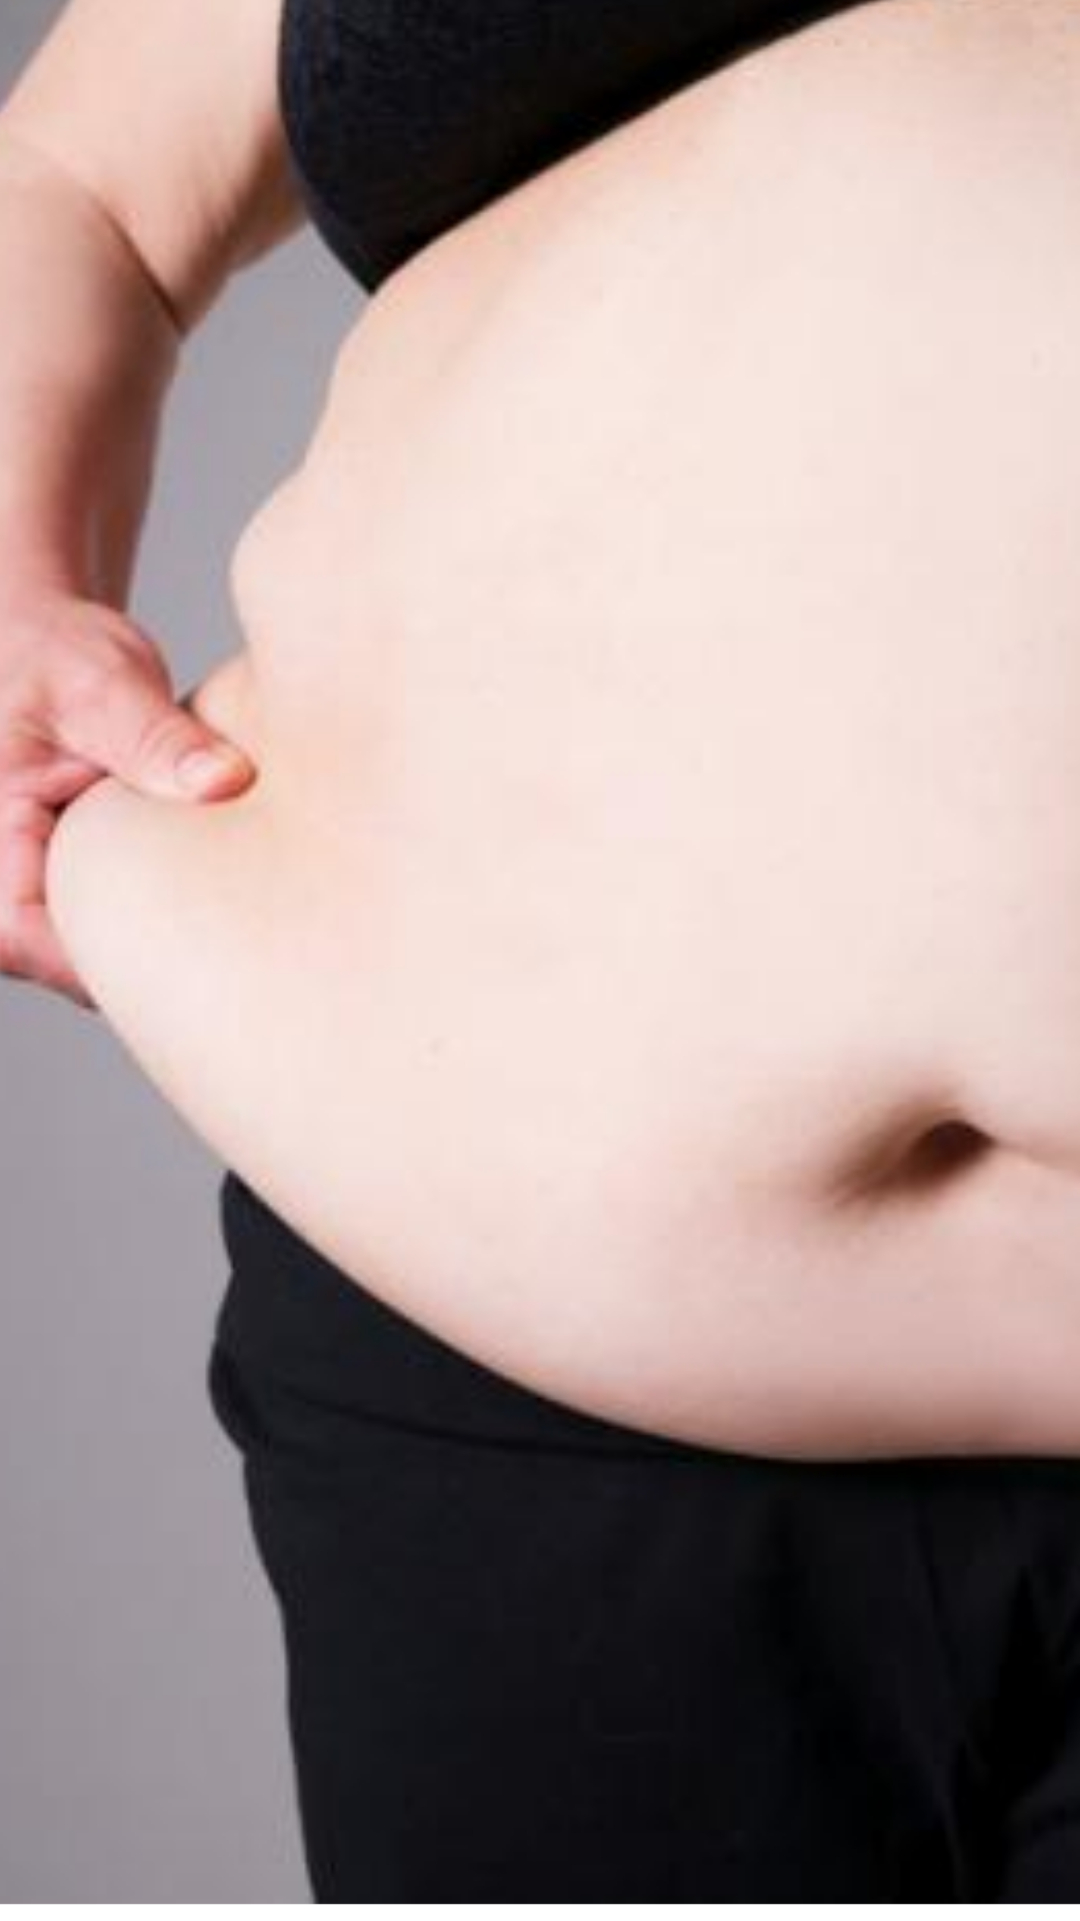 इन 9 कारणों से तेजी से बढ़ सकता है मोटापा